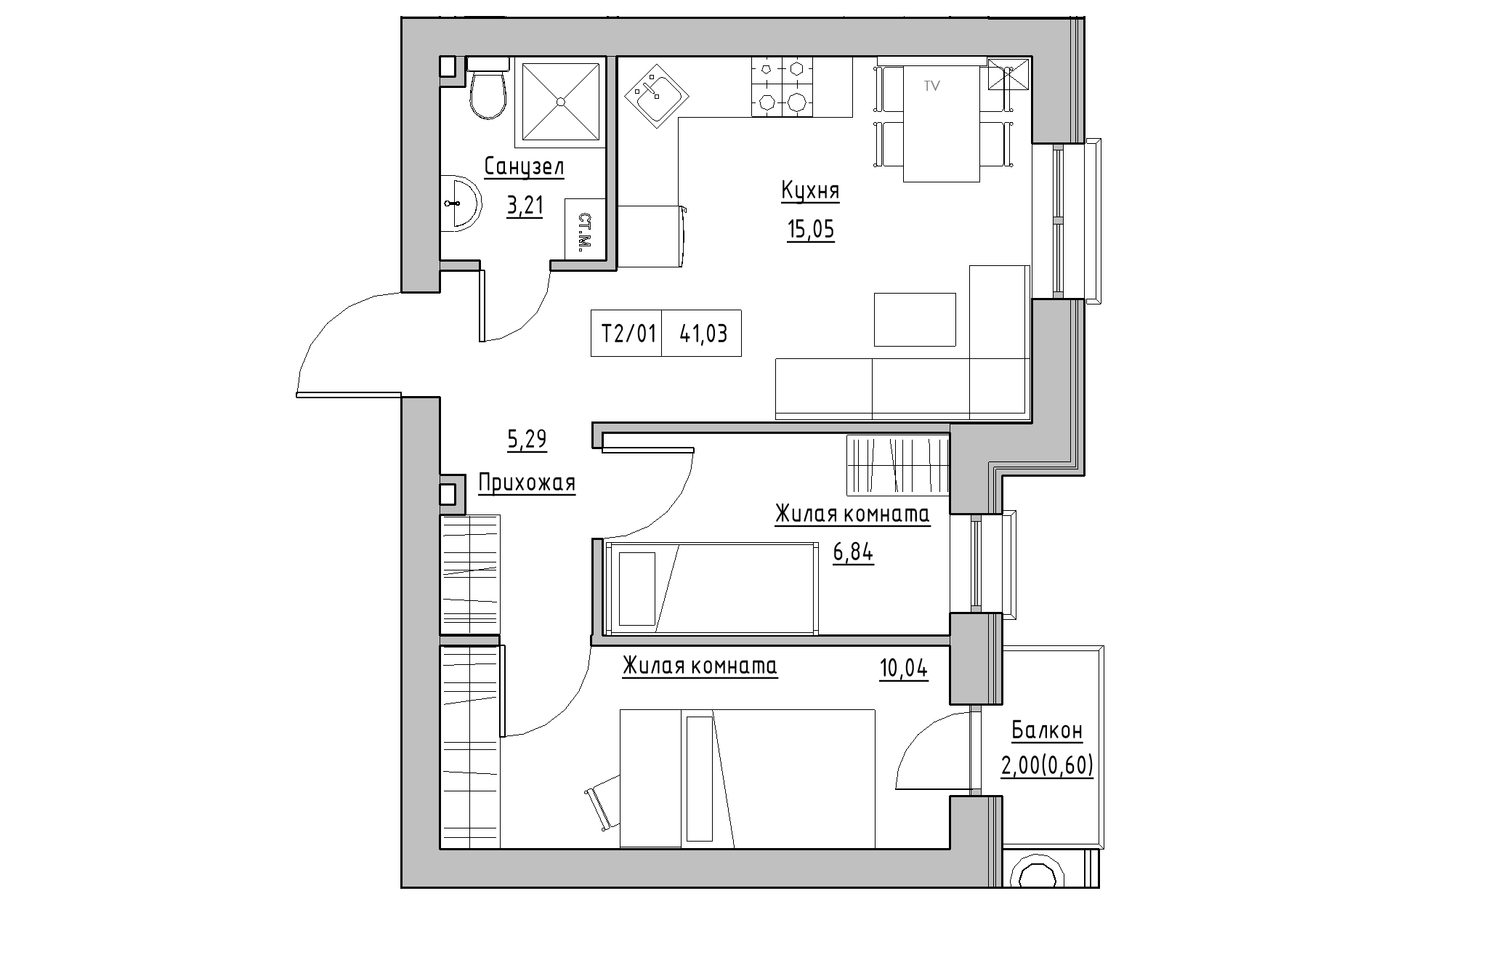 Планування 2-к квартира площею 41.03м2, KS-010-04/0010.